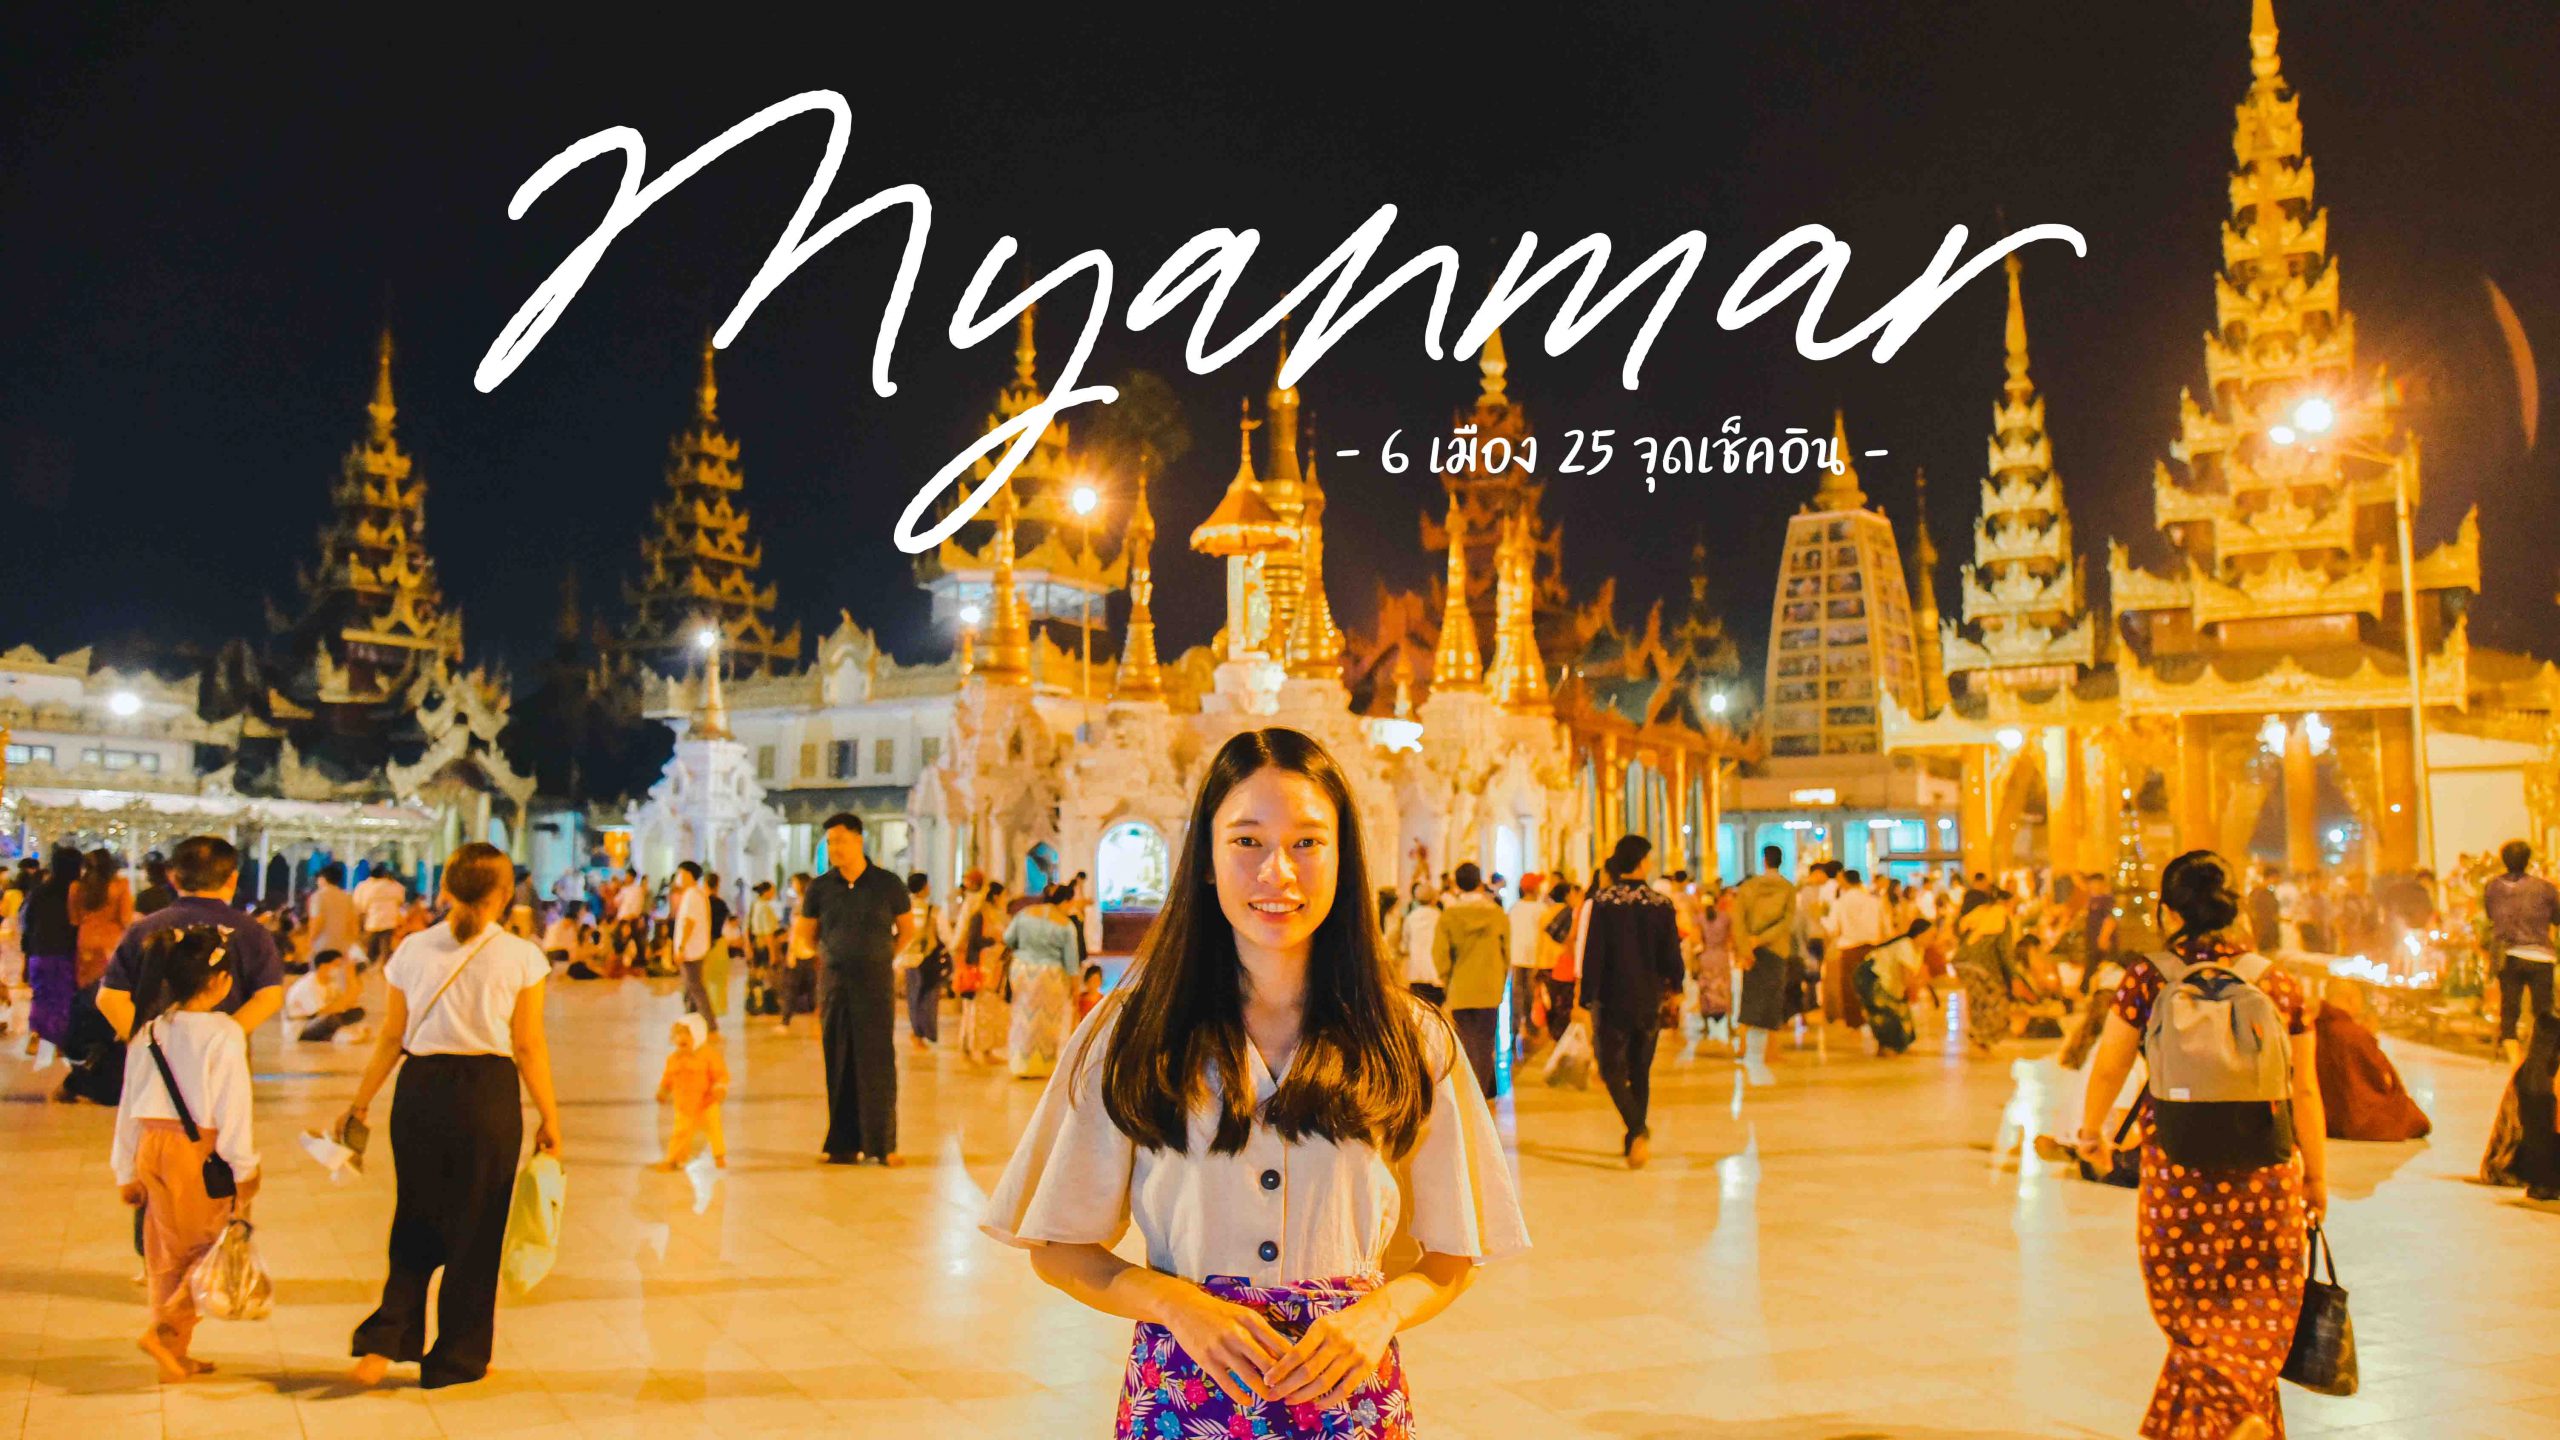 เที่ยวพม่า 6 เมือง 25 สถานที่ กับการได้ไปครบทั้ง 5 มหาบูชาสถานสูงสุดของพม่า